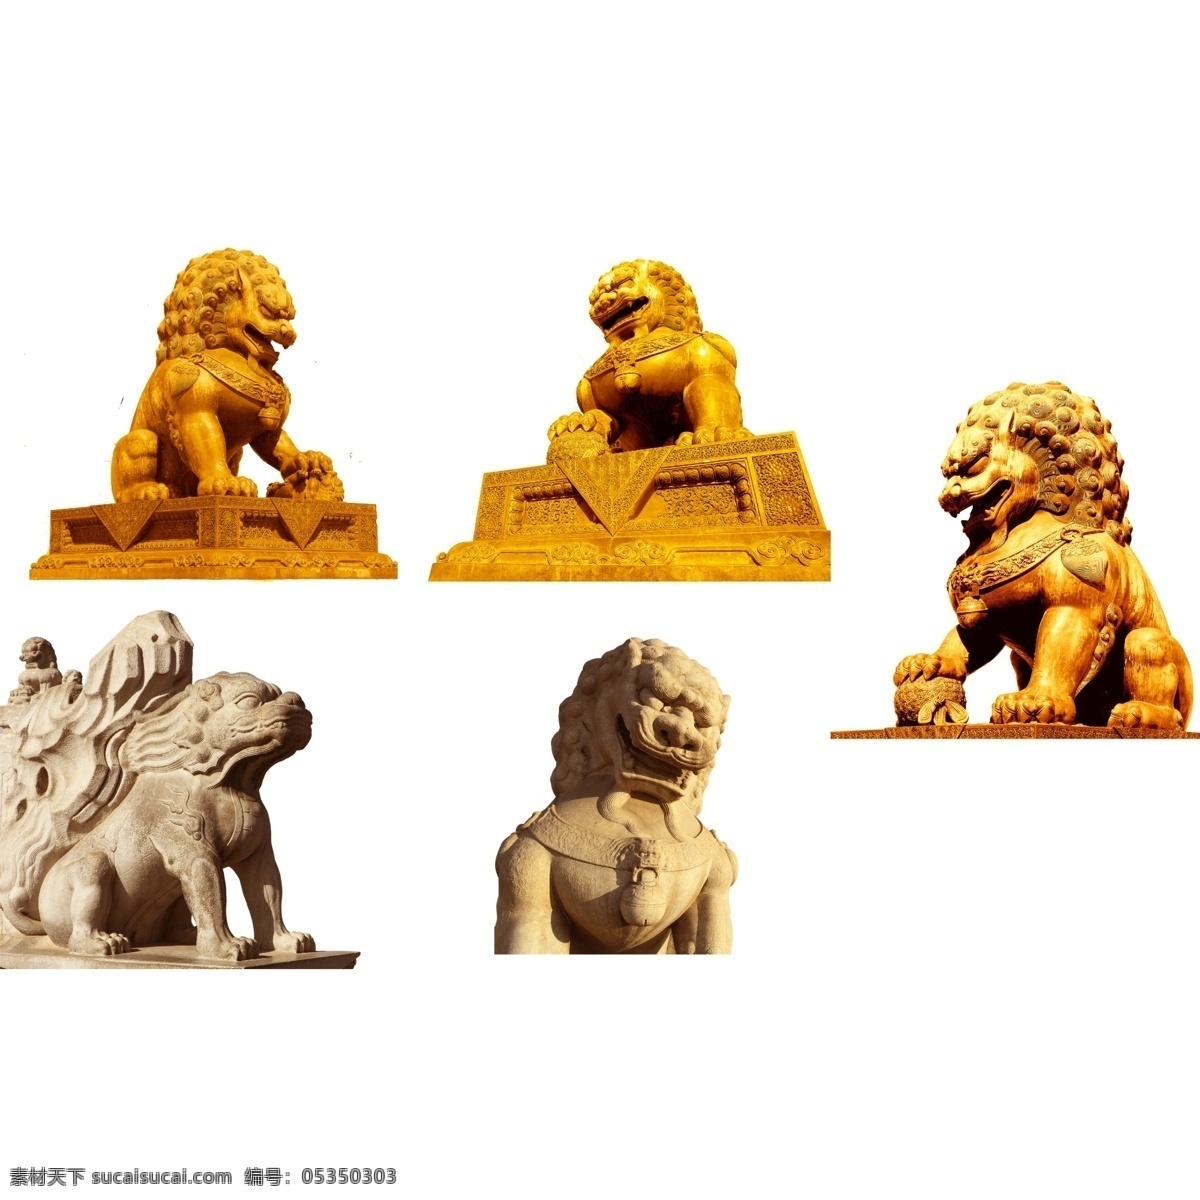 石狮子图片 狮子 铜狮子 狮子雕像 门口狮子 镇宅狮子 石狮子 石狮 psdpng 分层